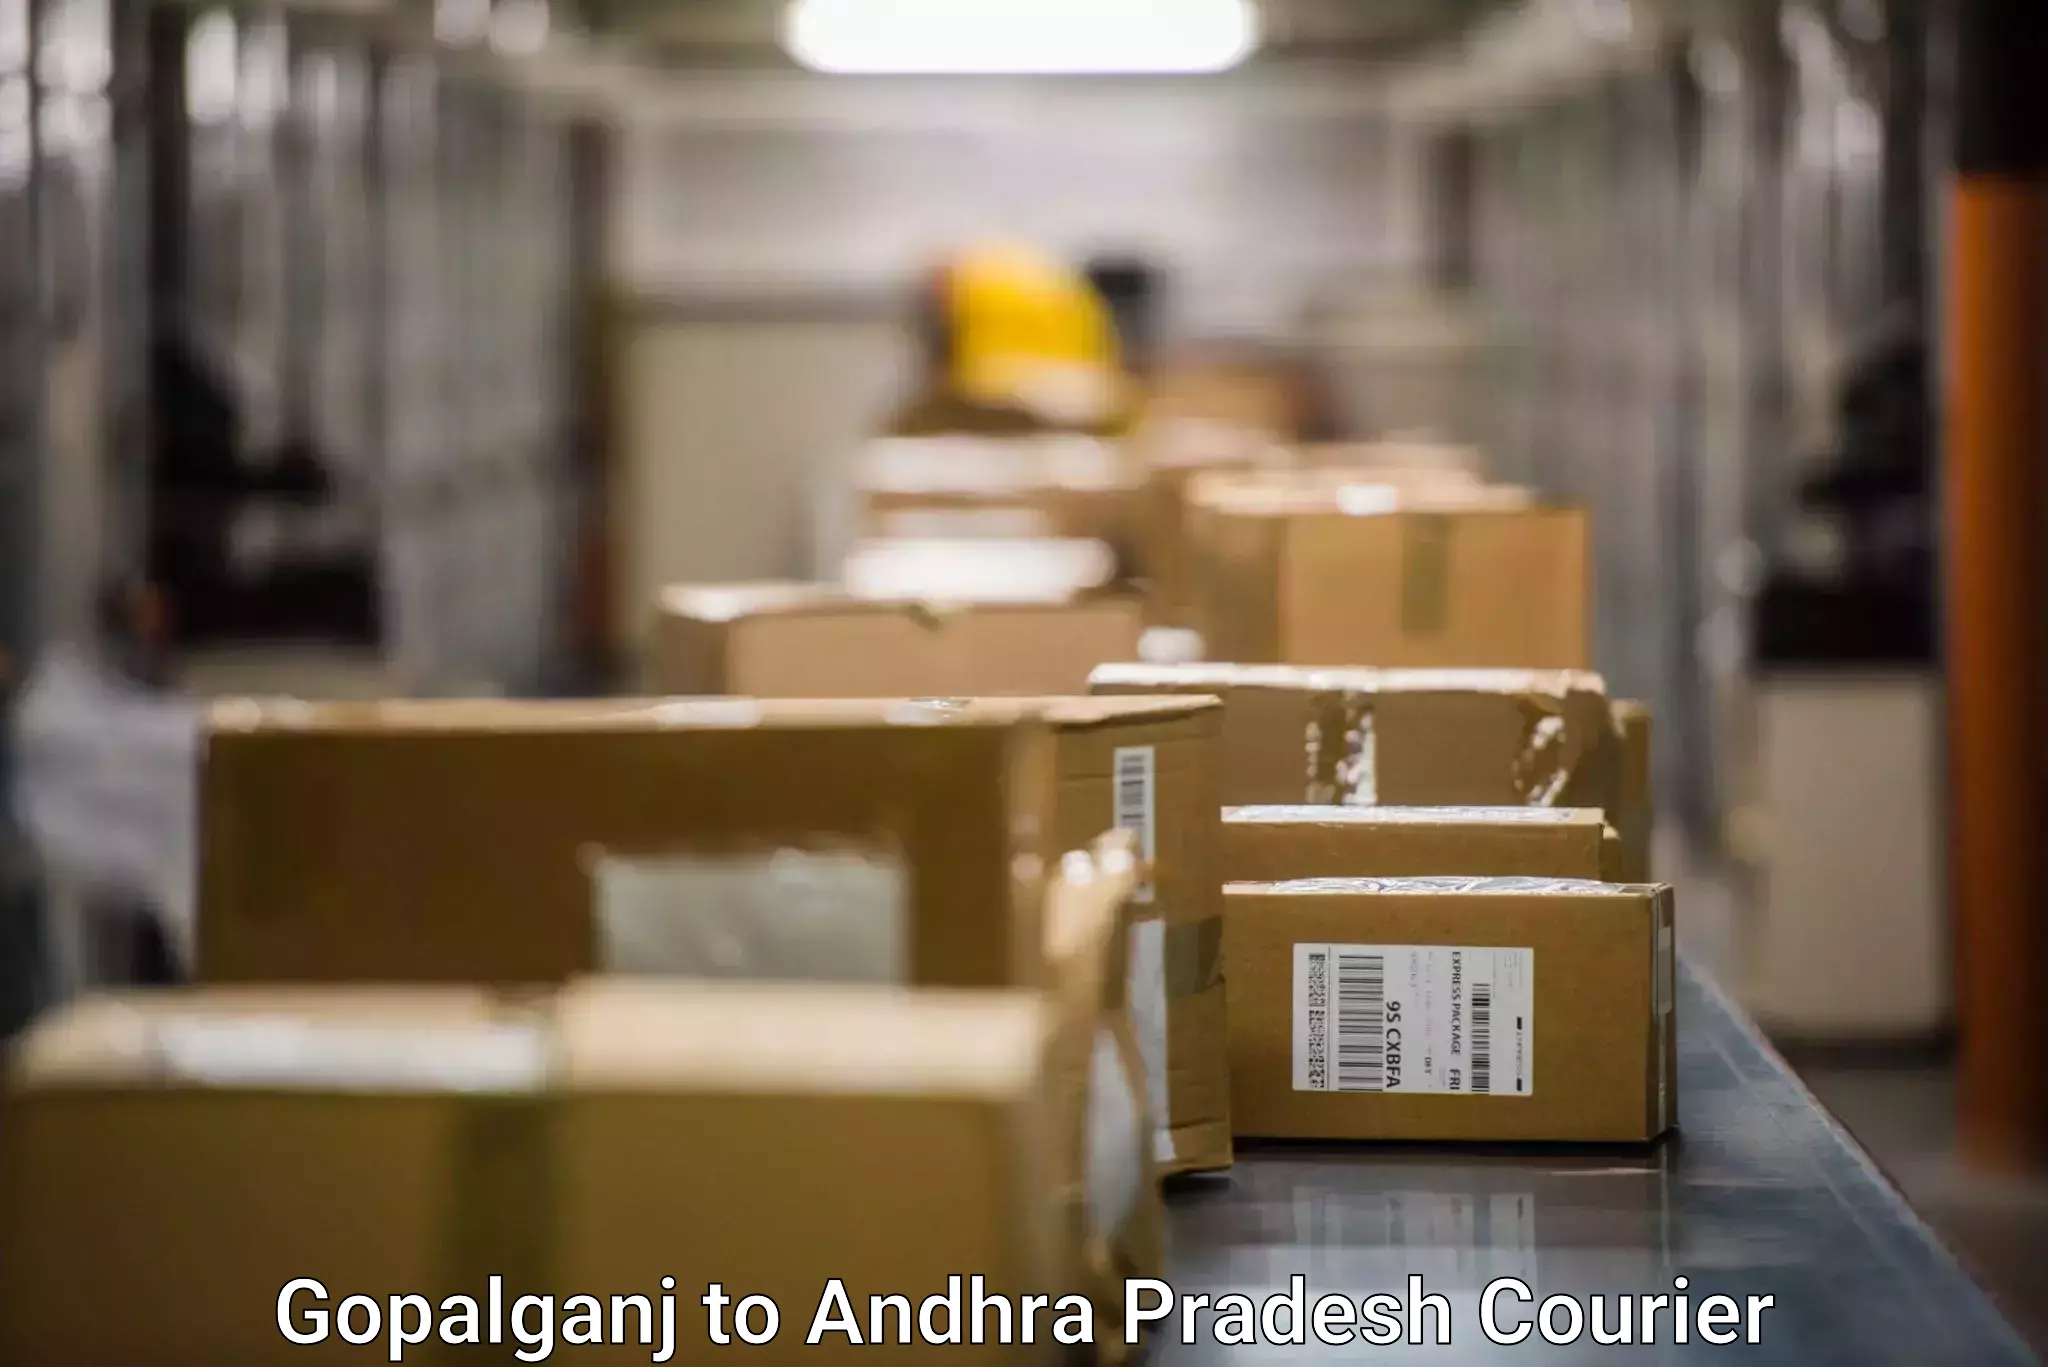 Fast-track shipping solutions Gopalganj to Gannavaram